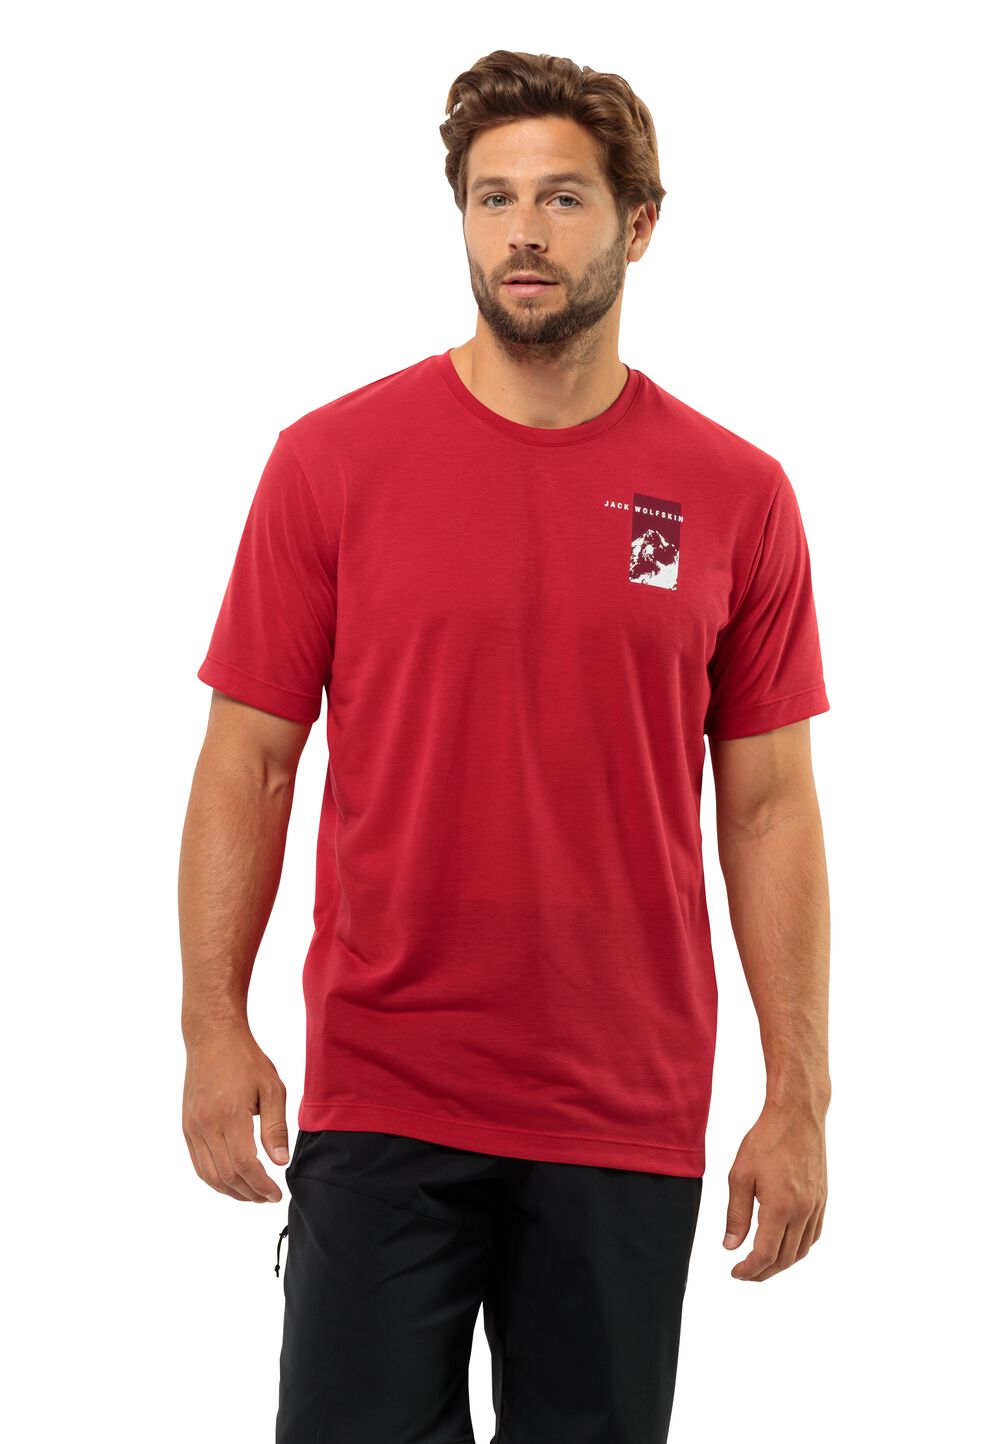 Jack Wolfskin Vonnan S S Graphic T-Shirt Men Functioneel shirt Heren XXL rood red glow